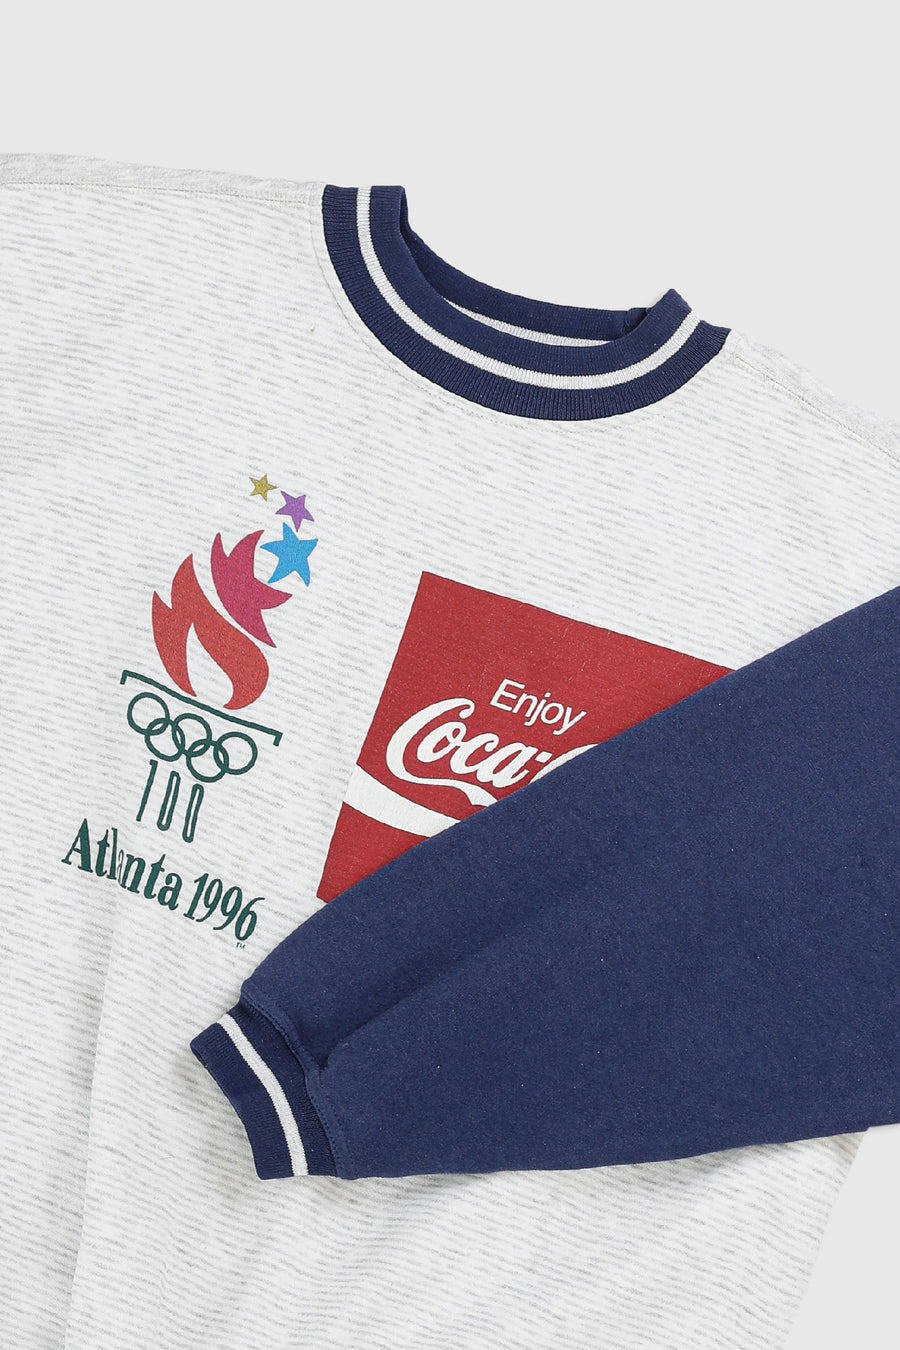 Vintage Olympics 1996 Sweatshirt